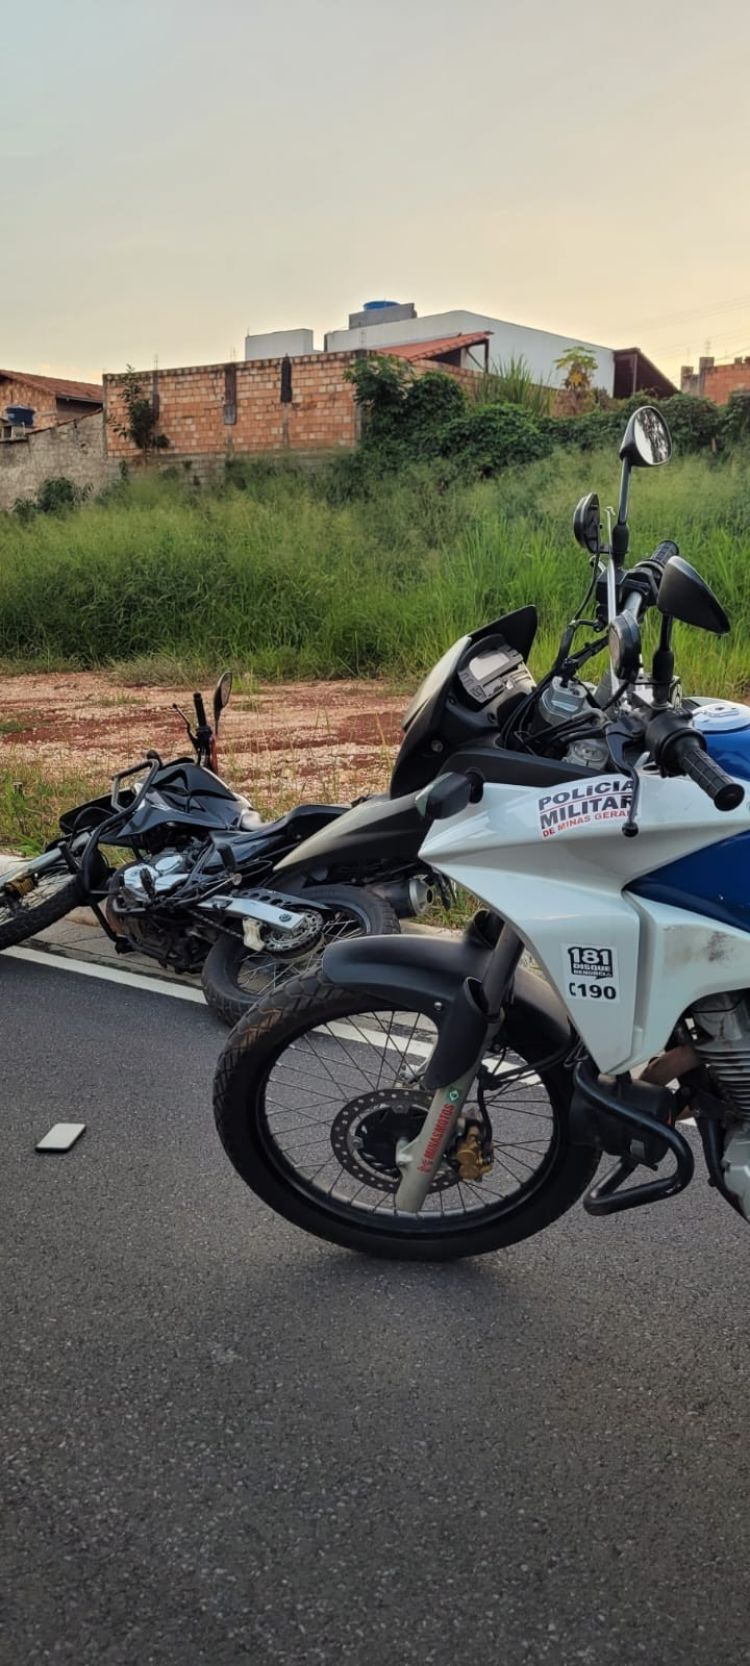 Motocicleta irregular é apreendida em Pará de Minas